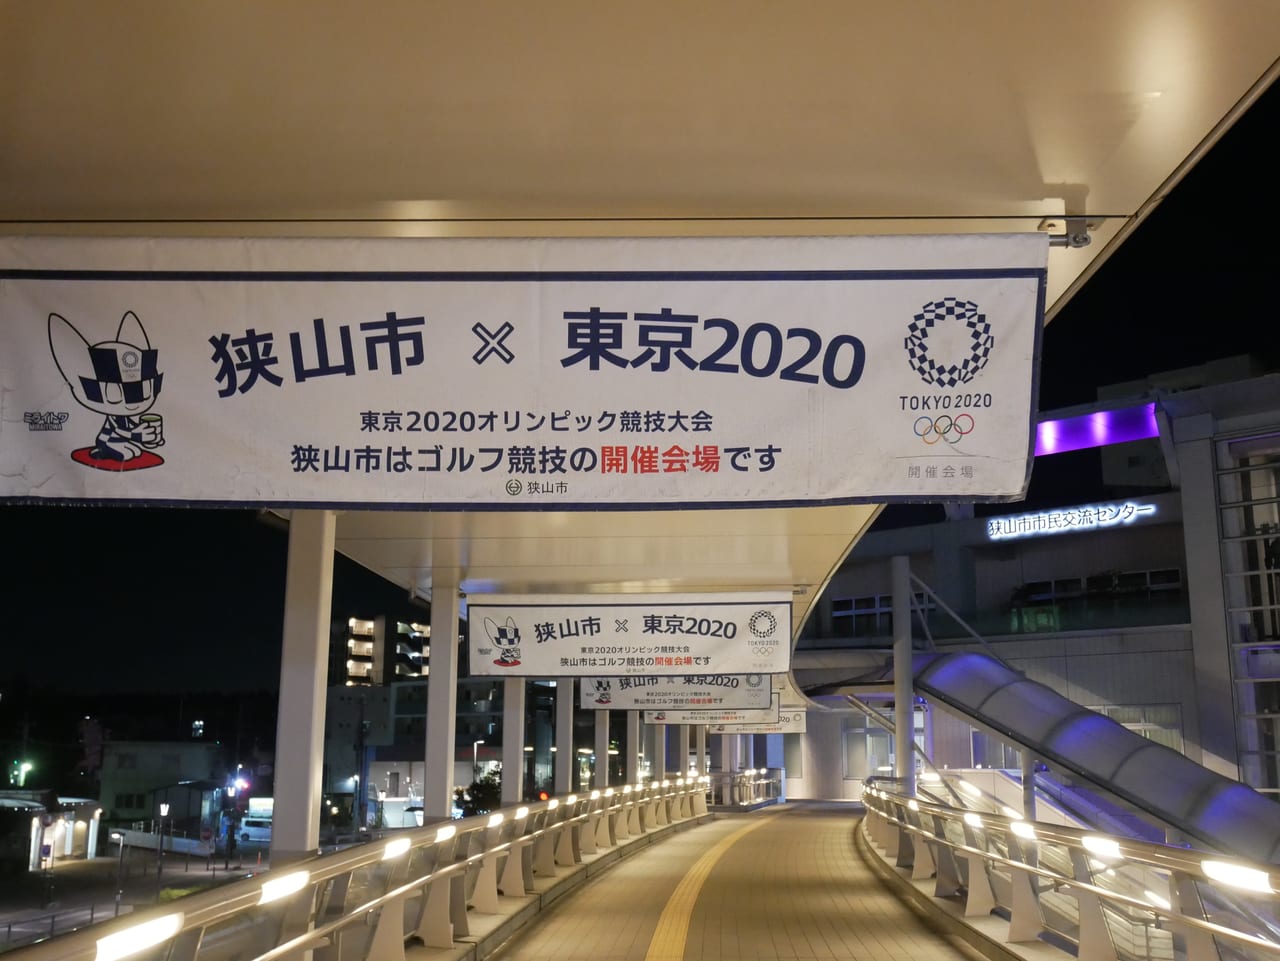 「狭山市×東京2020」と書かれた旗